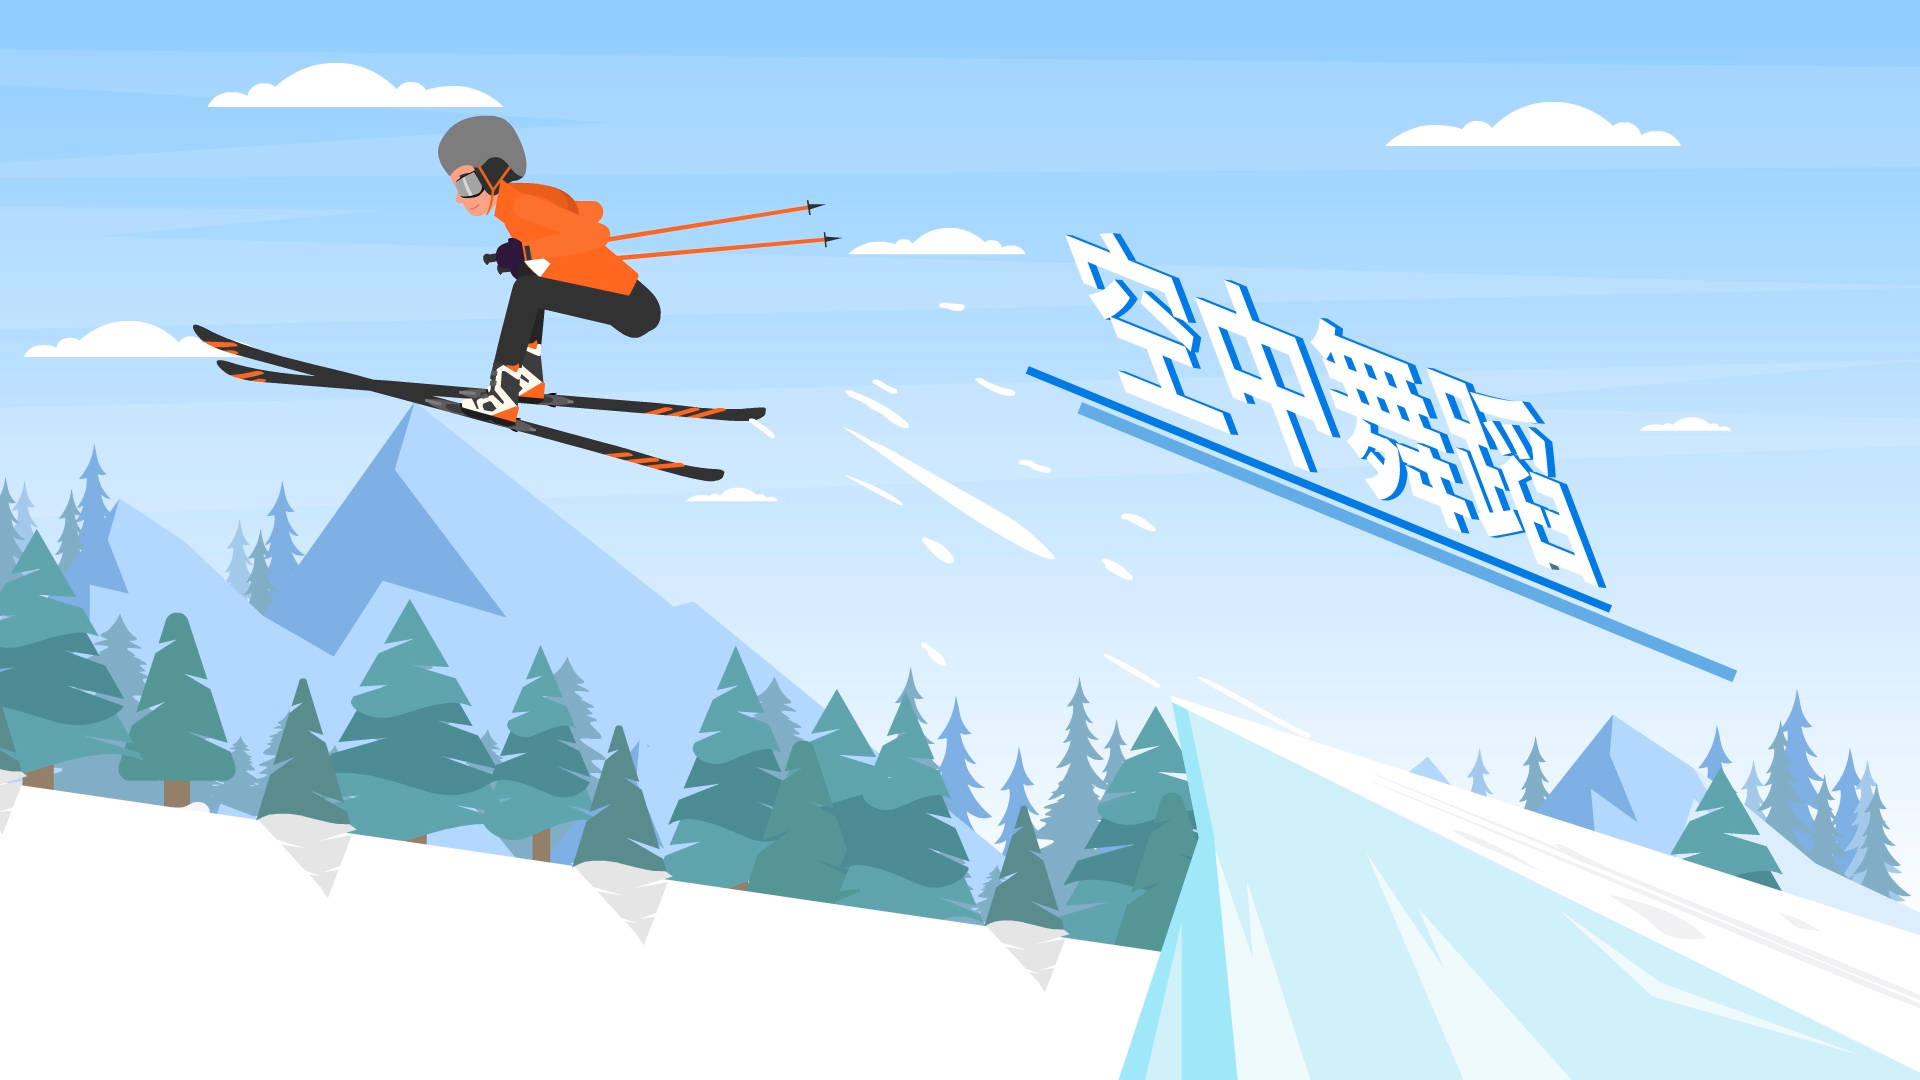 走近冬奥自由式滑雪舞出飞一般的感觉